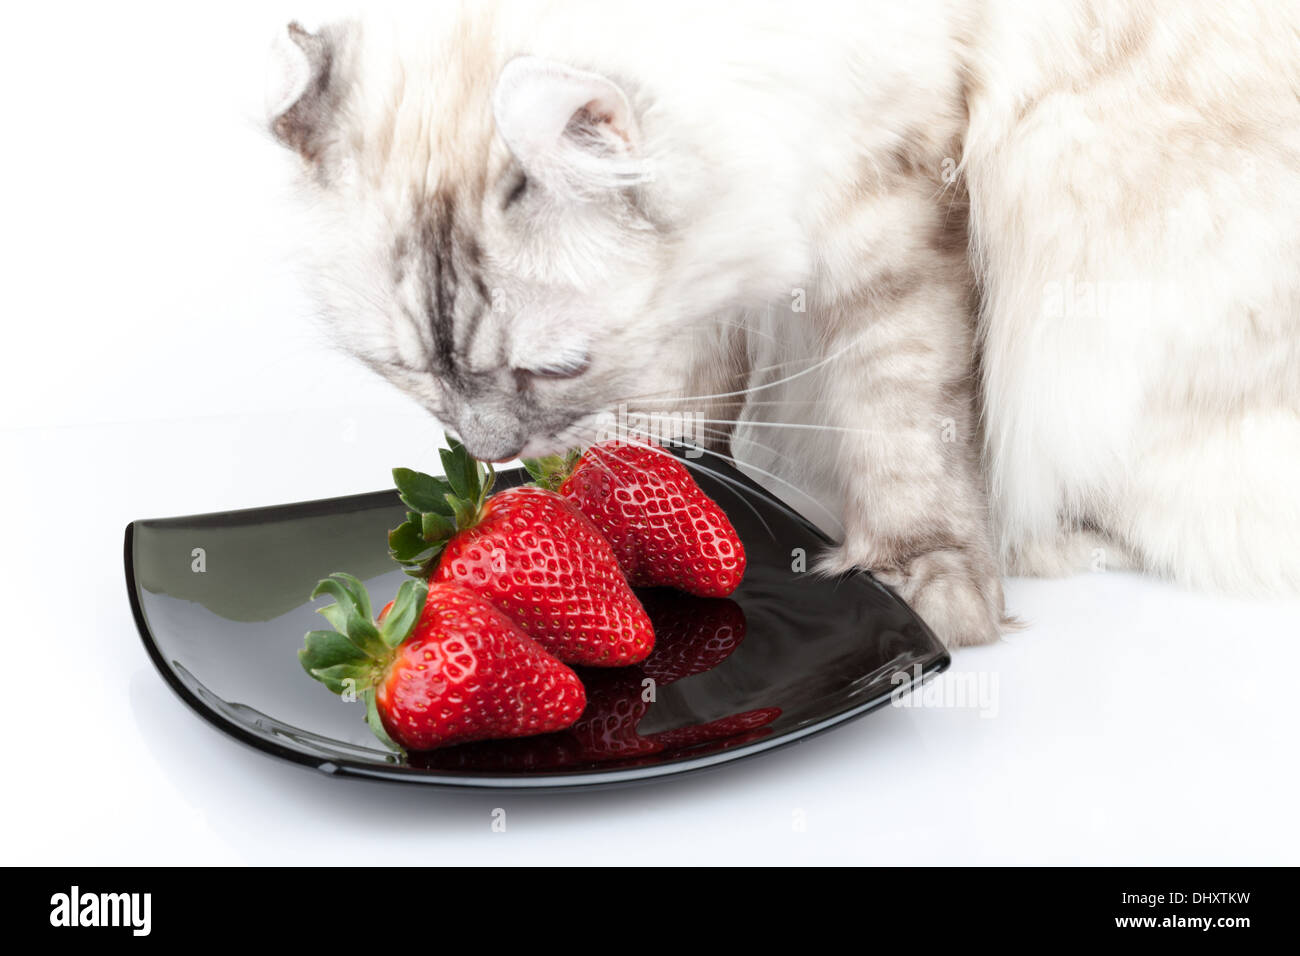 Weiße Katze frisst sorgfältig frische rote Erdbeere Stockfoto